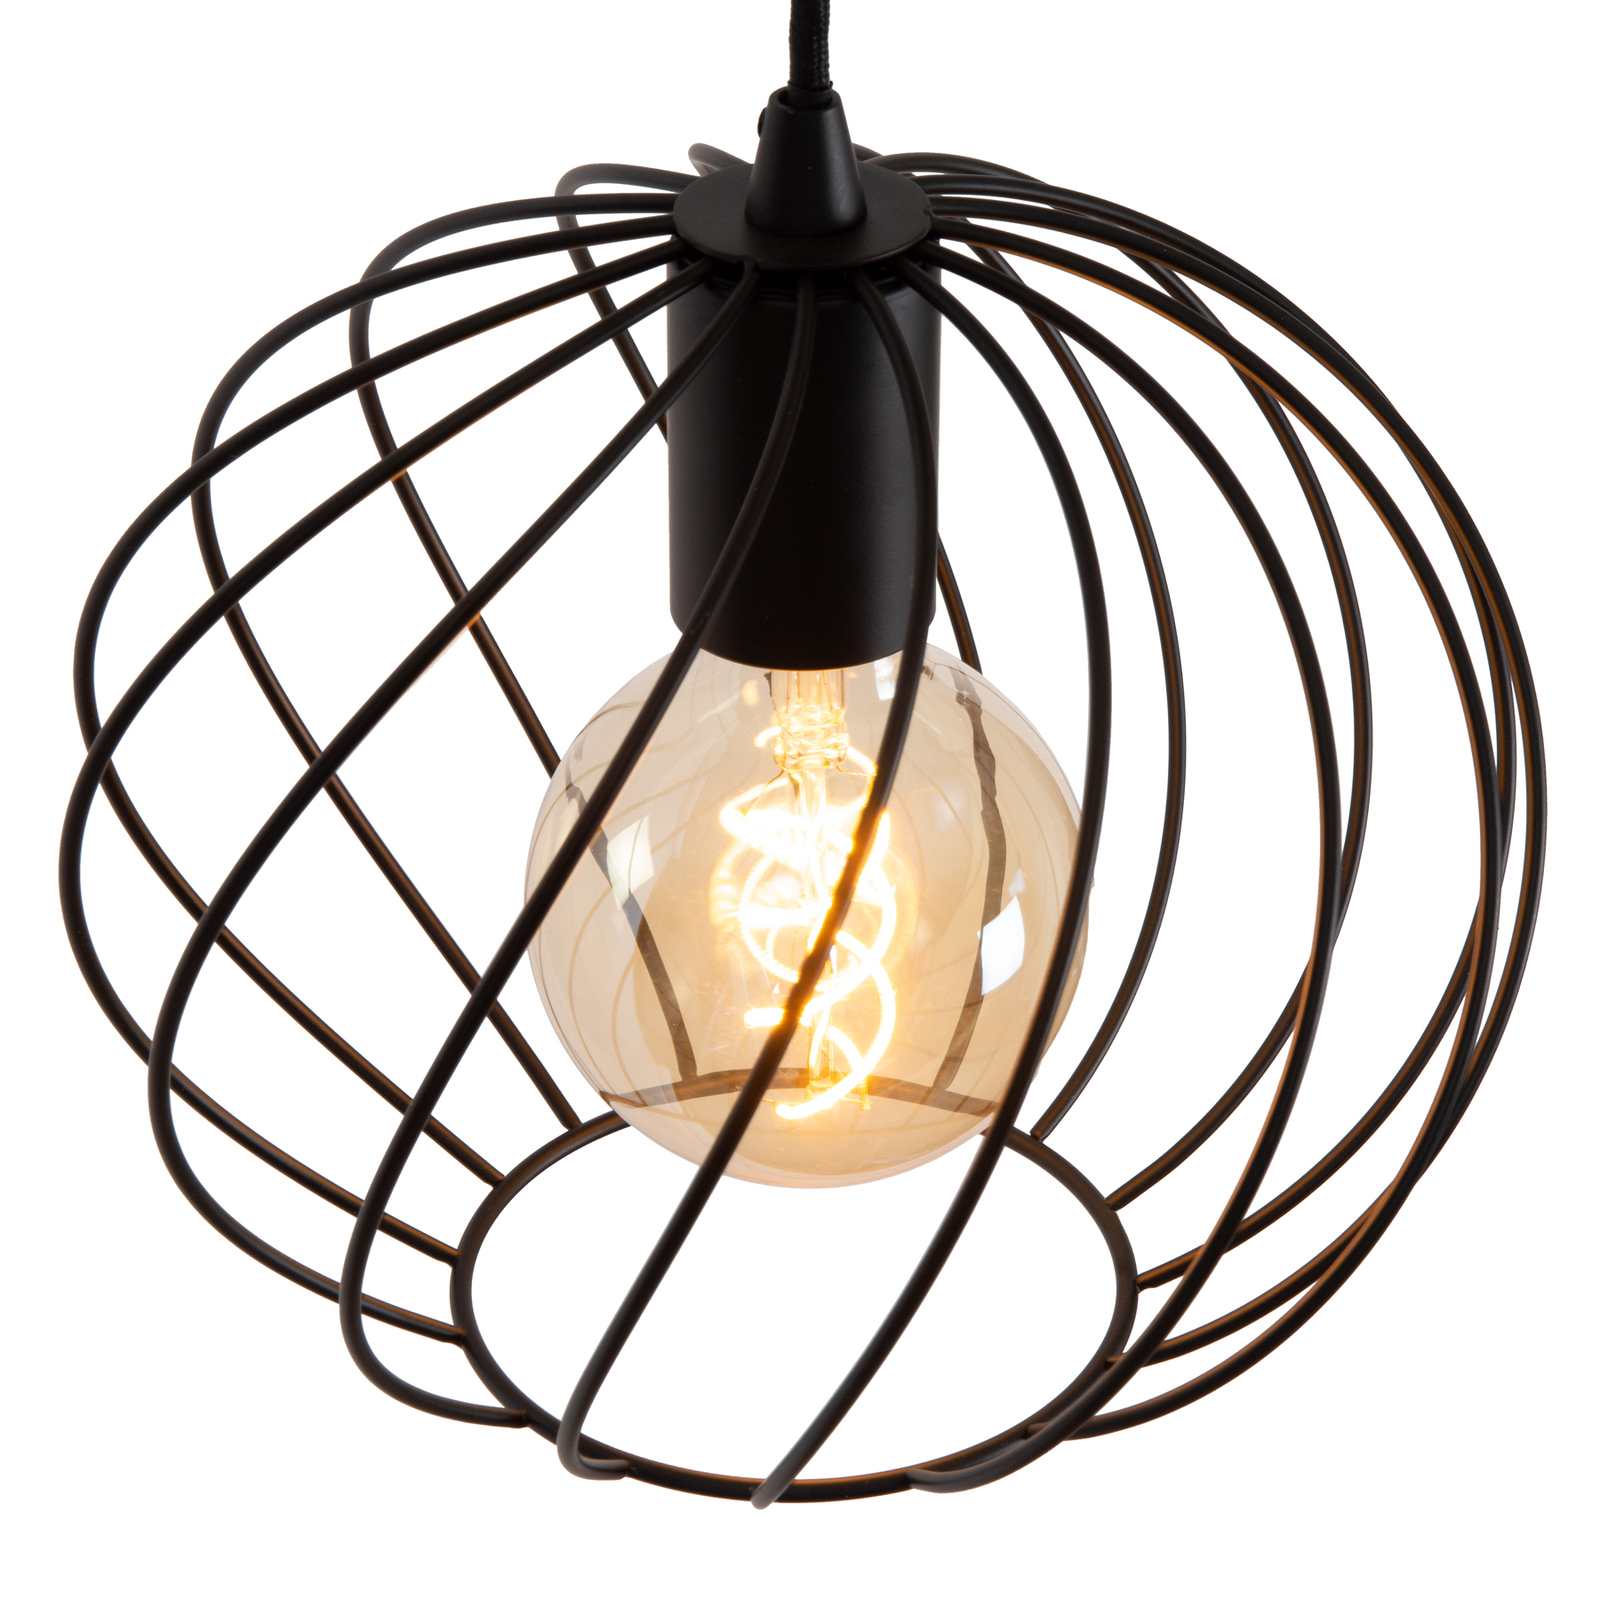 Danza pendant light, 3-bulb, round, black